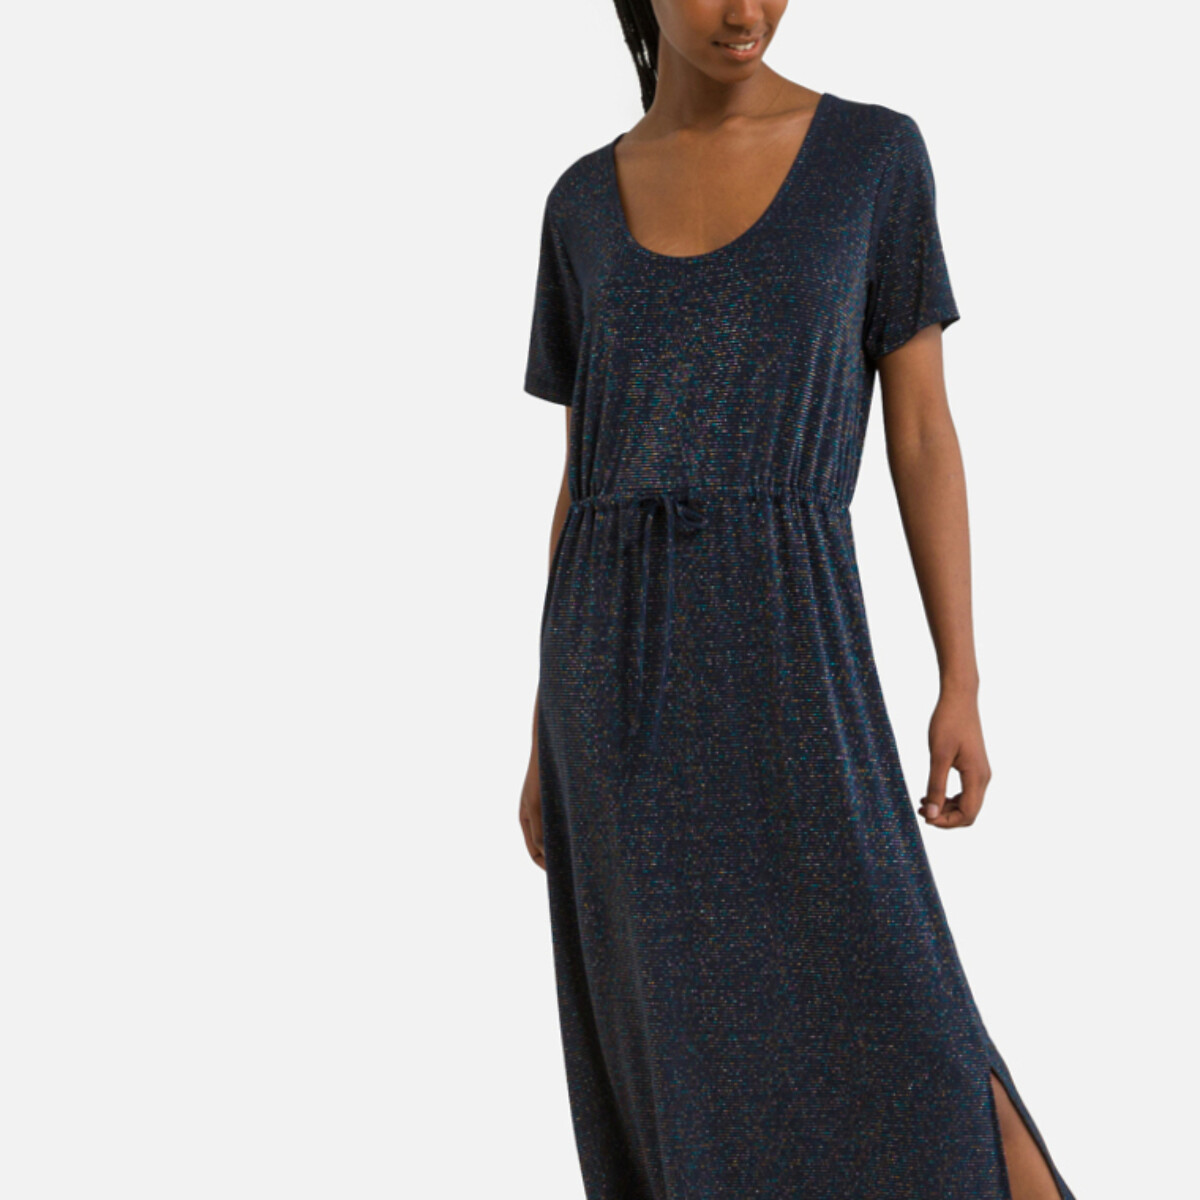 Платье длинное с эффектом блеска XS синий платье длинное с эффектом блеска xs синий